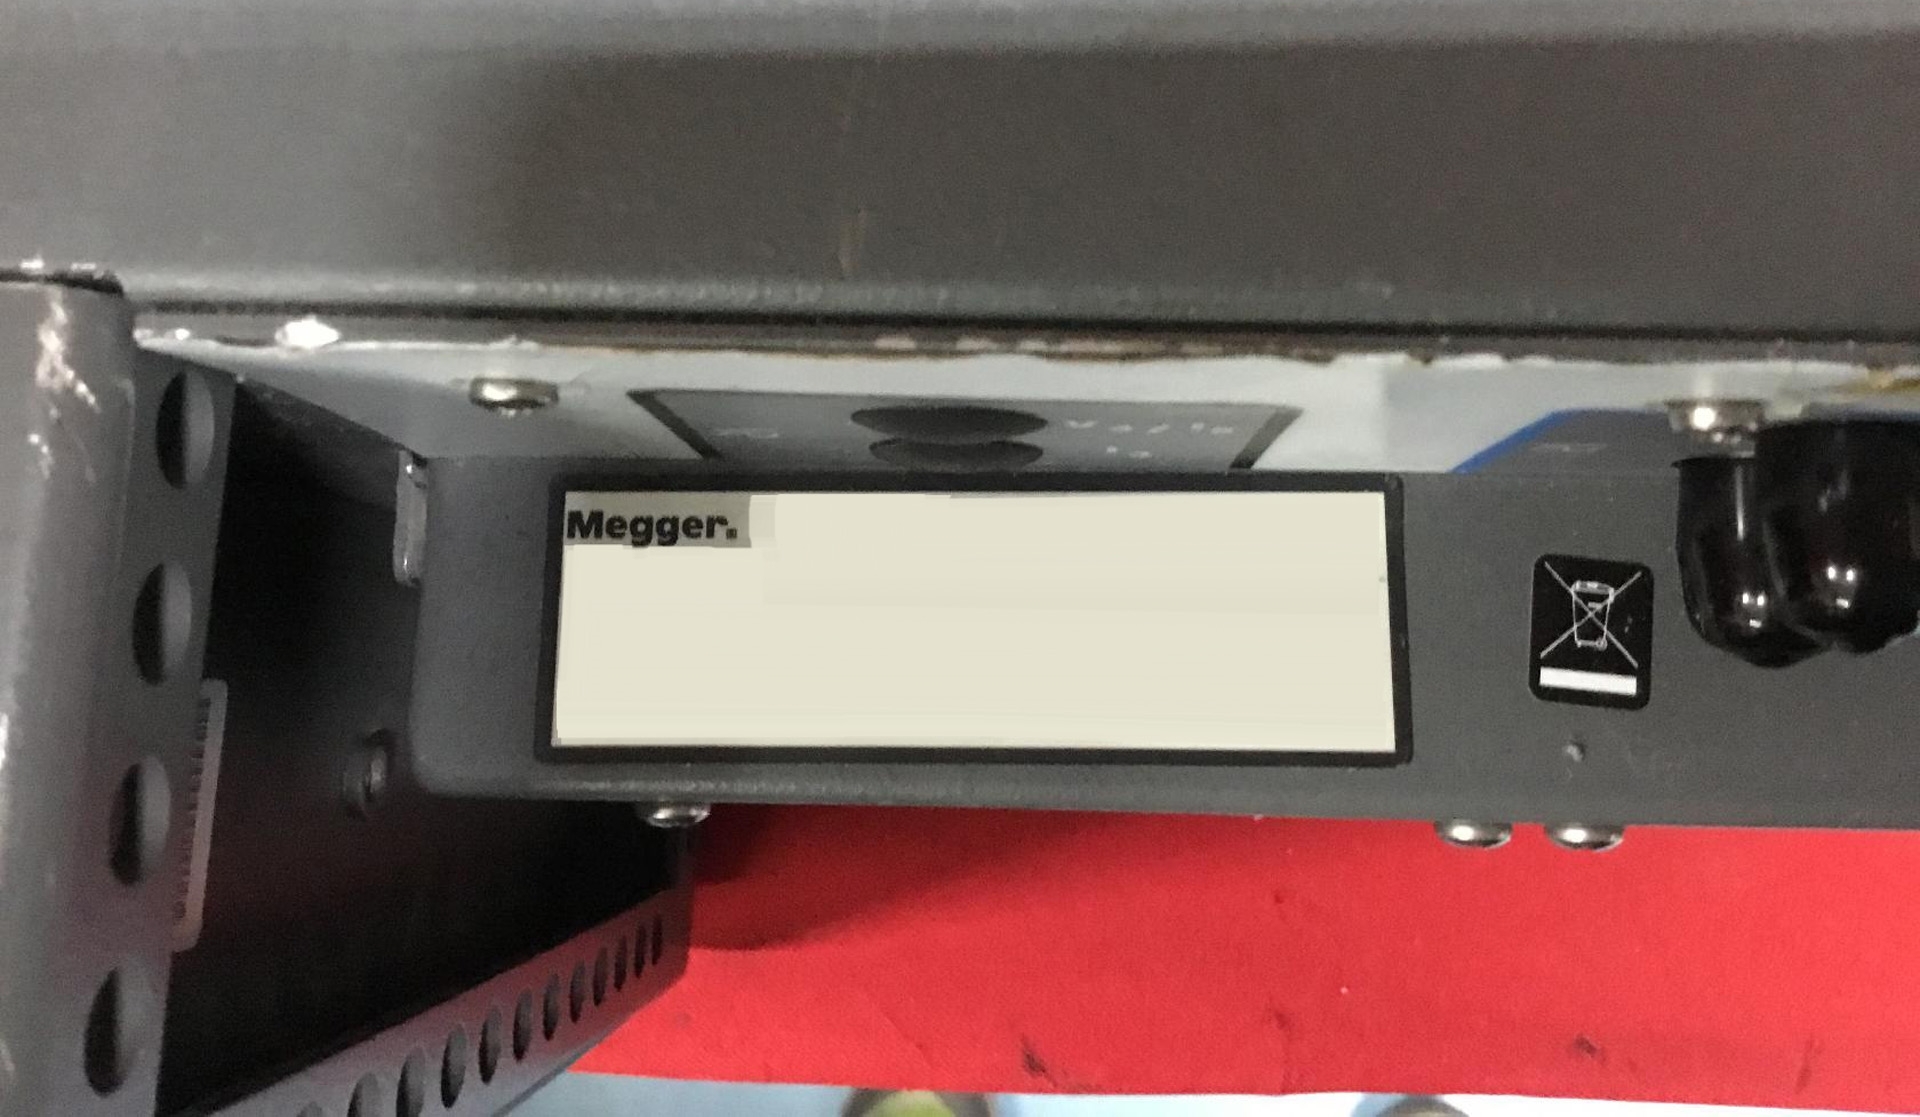 图为 已使用的 MEGGER MPRT8430 待售